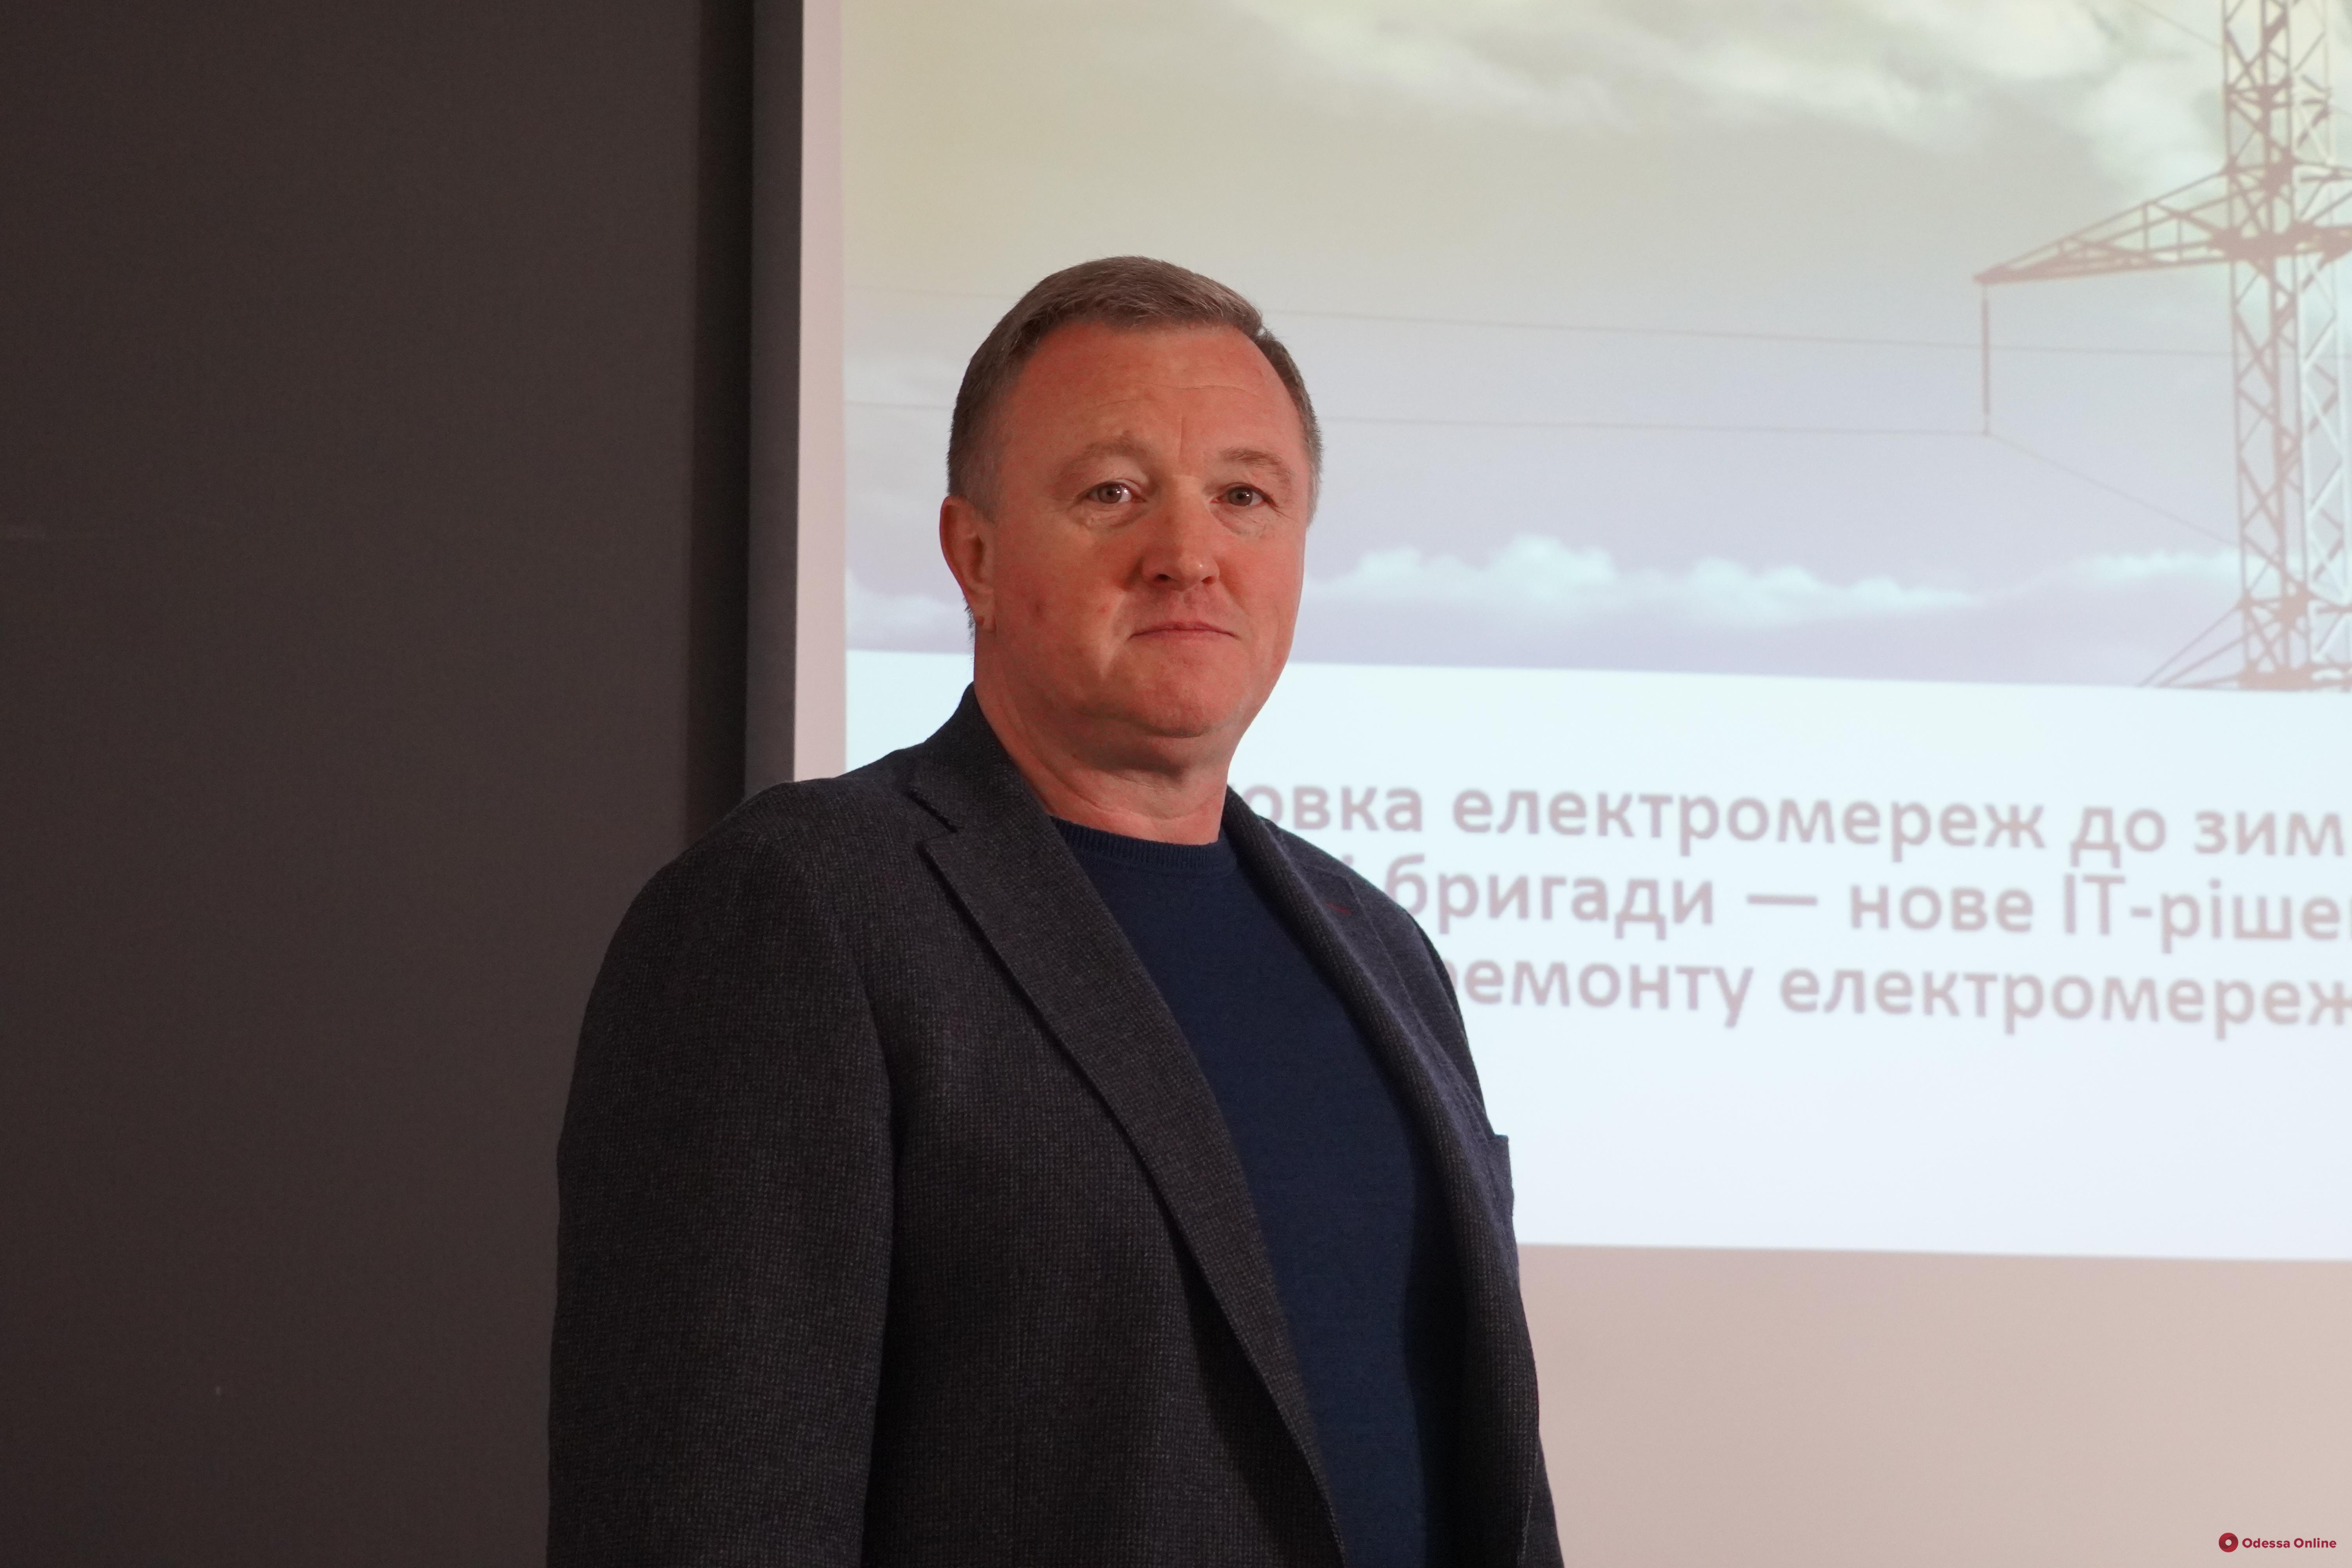 «Сейчас света нет в 70% Одесской области — действует противоаварийное отключение», — генеральный директор ДТЭК Одесские электросети